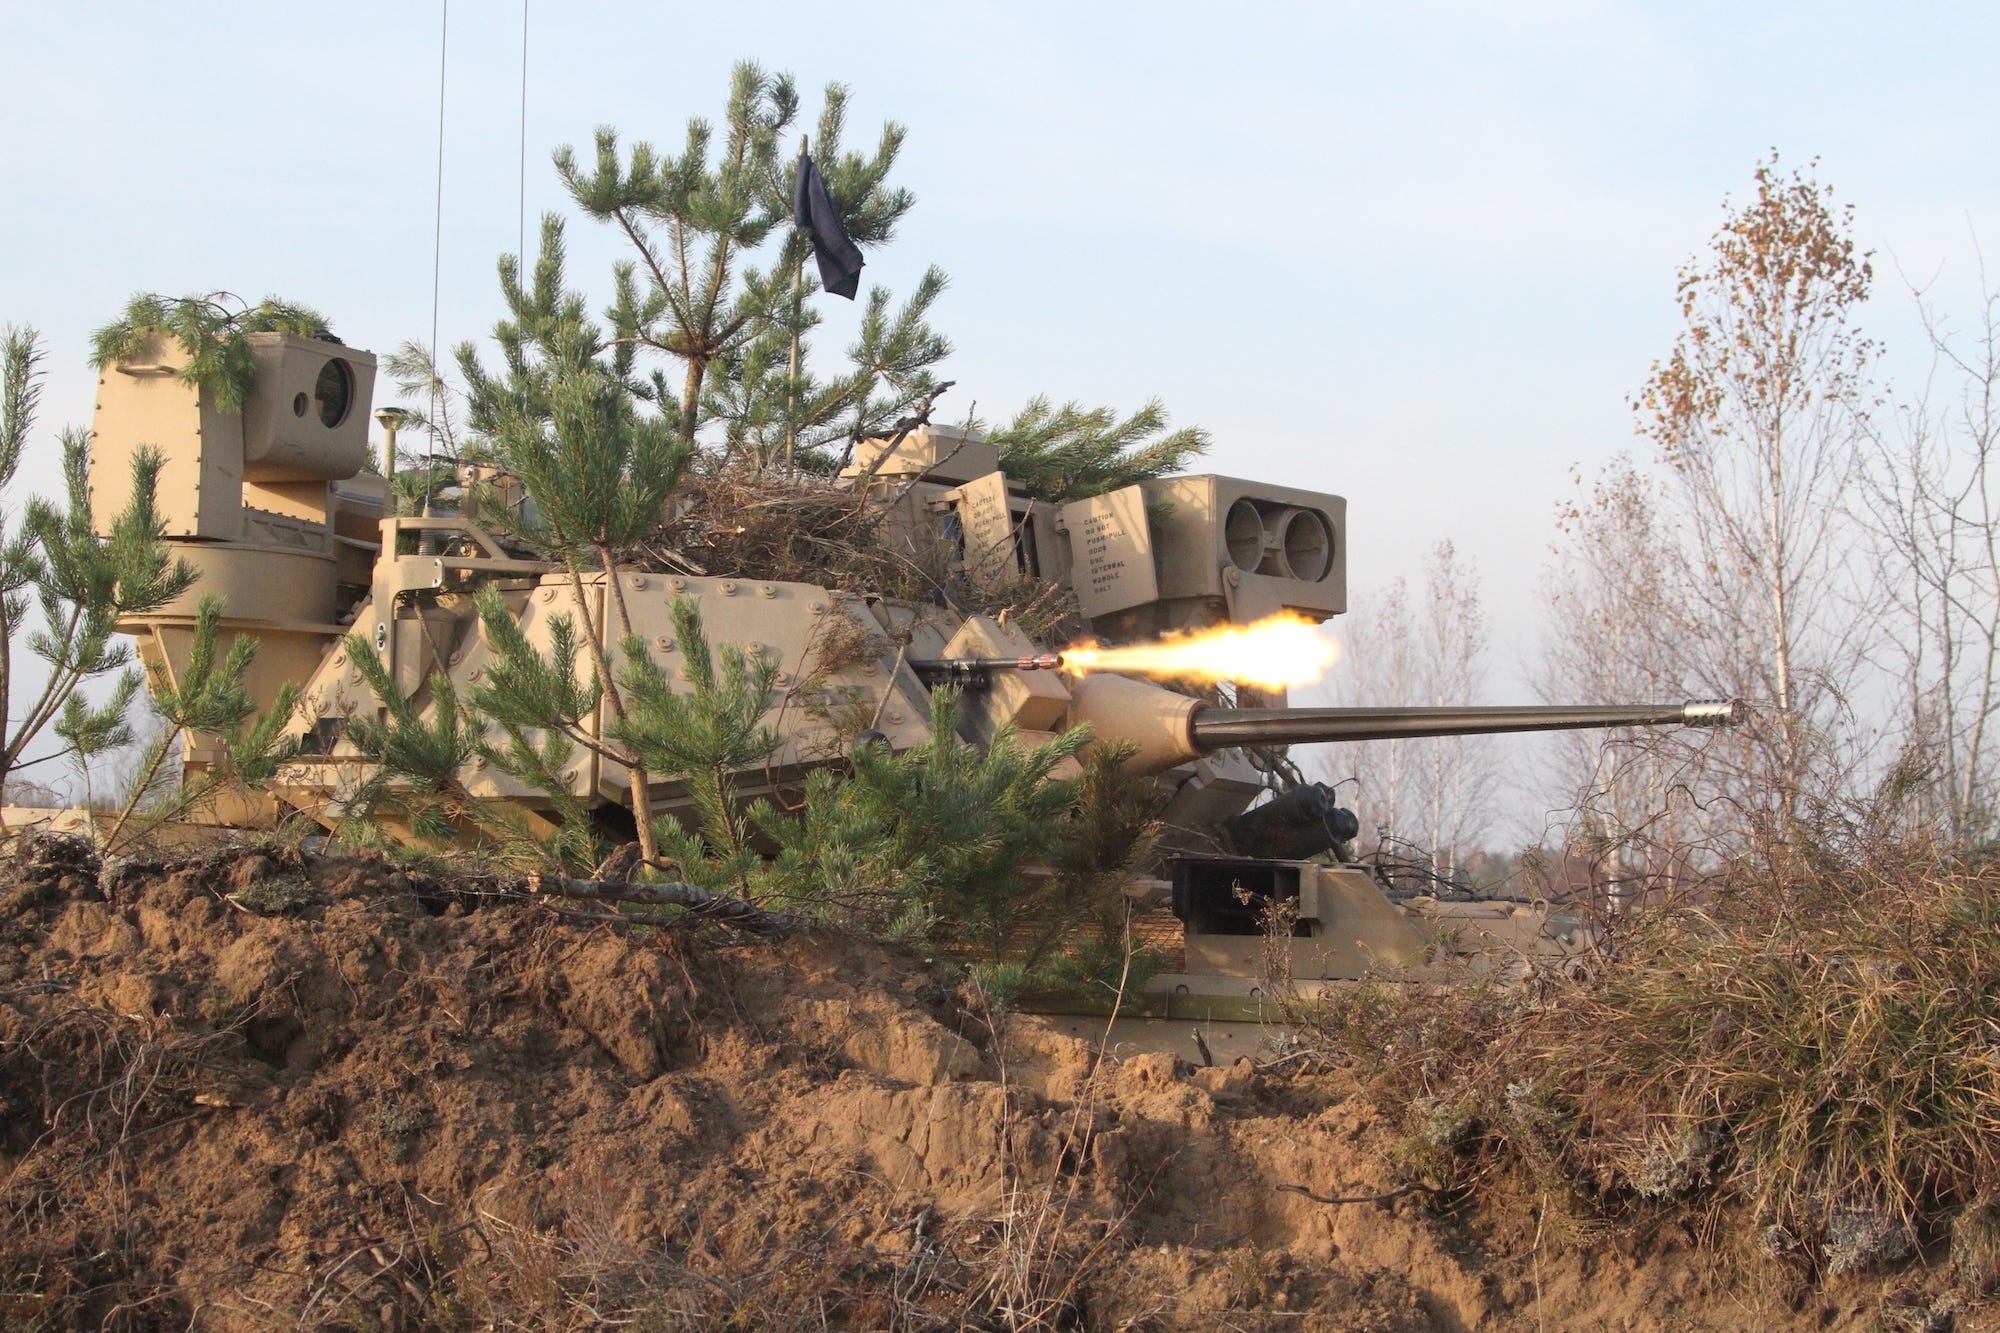 Army Bradley gepanzertes Kampffahrzeug M240 Maschinengewehr